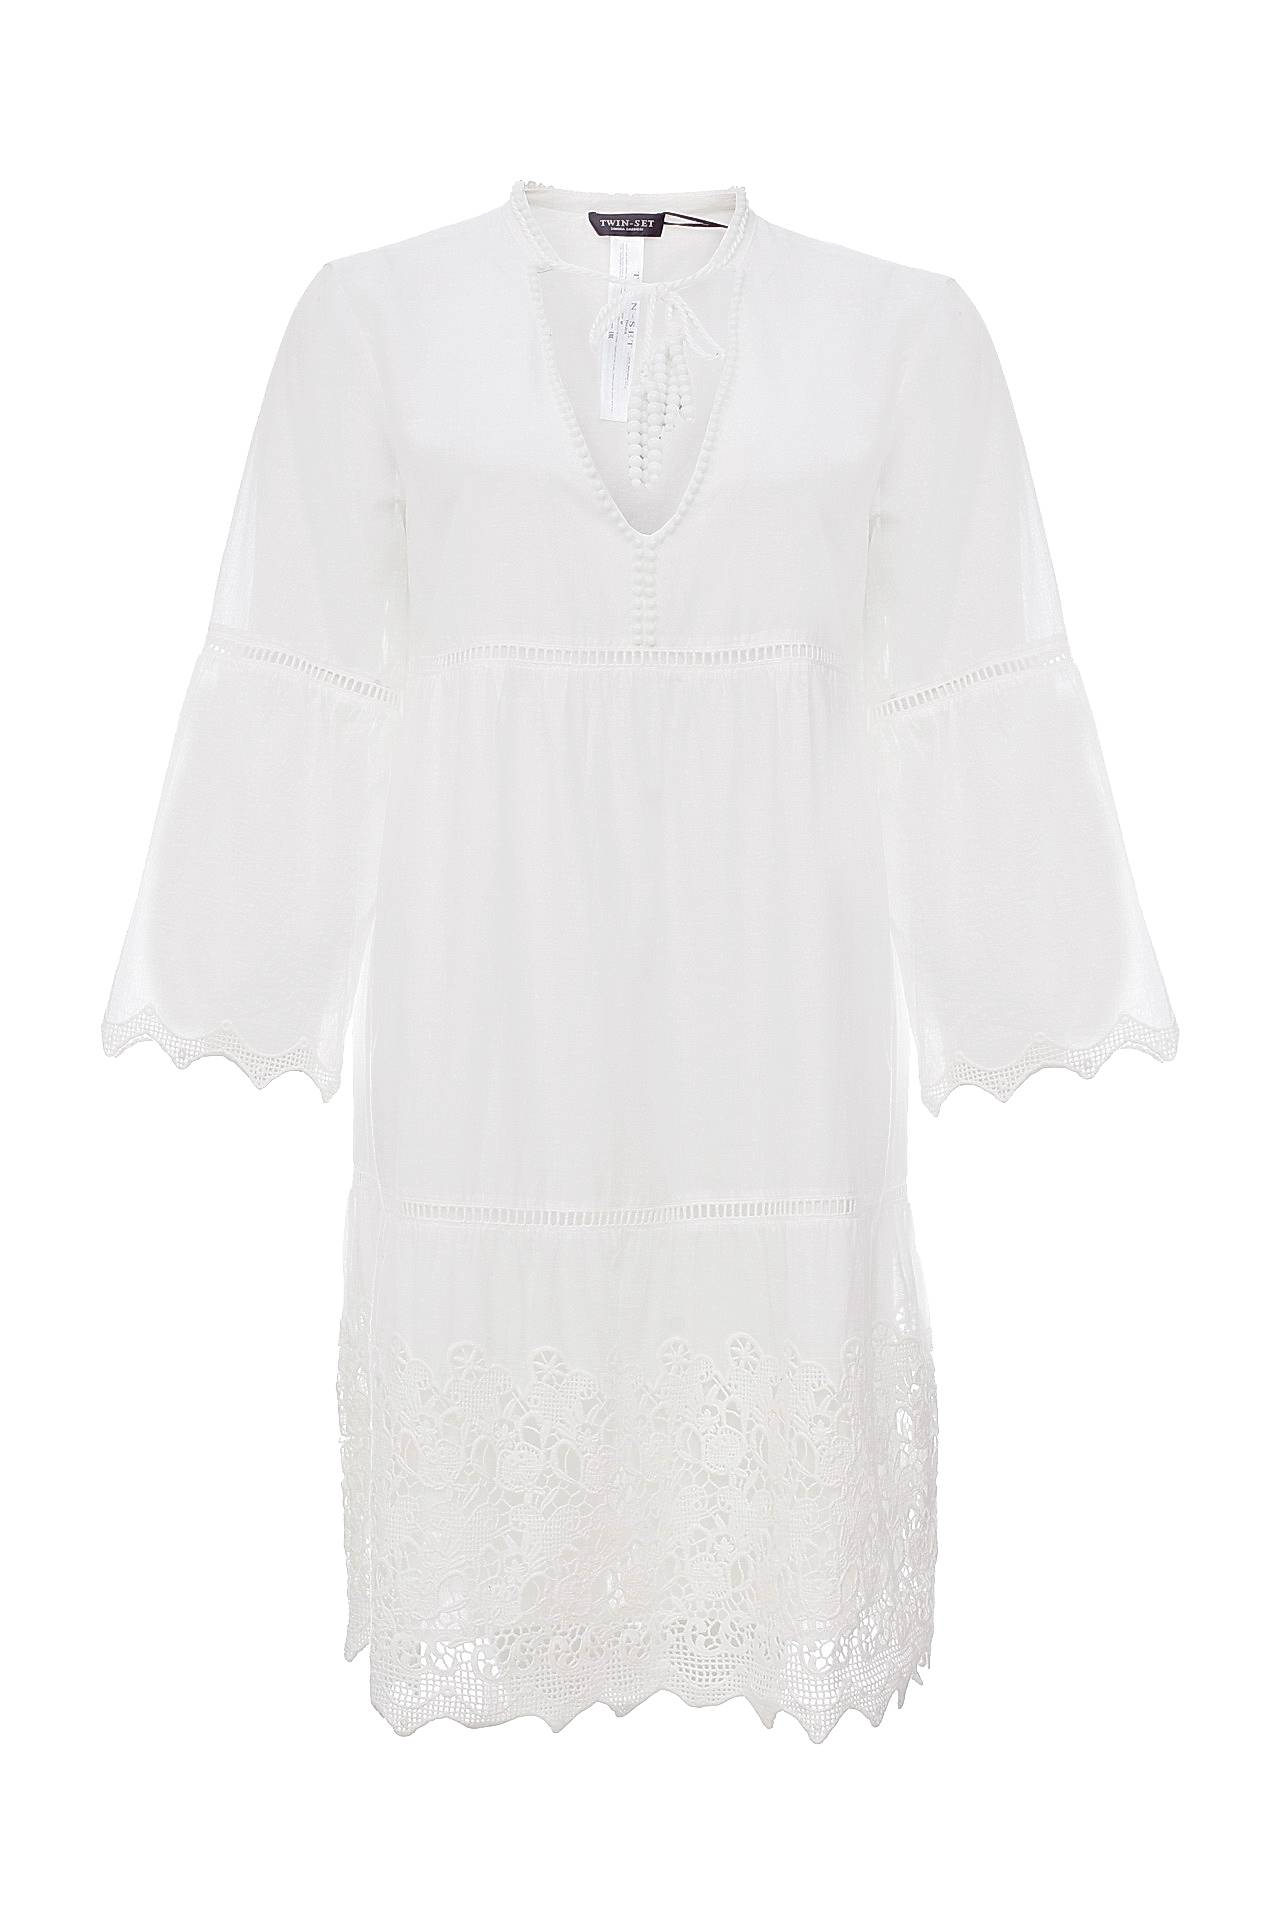 Одежда женская Платье TWIN-SET (TS62CA/16.2). Купить за 8700 руб.